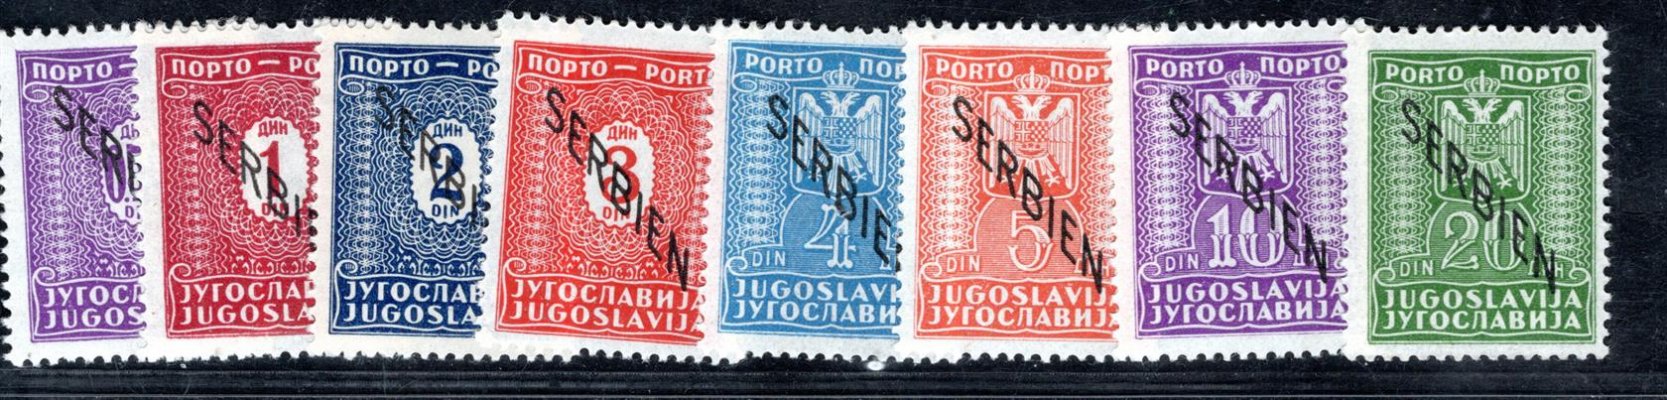 Srbsko - Mi. D 1 - 8, doplatní, kompletní přetisková řada, hledané